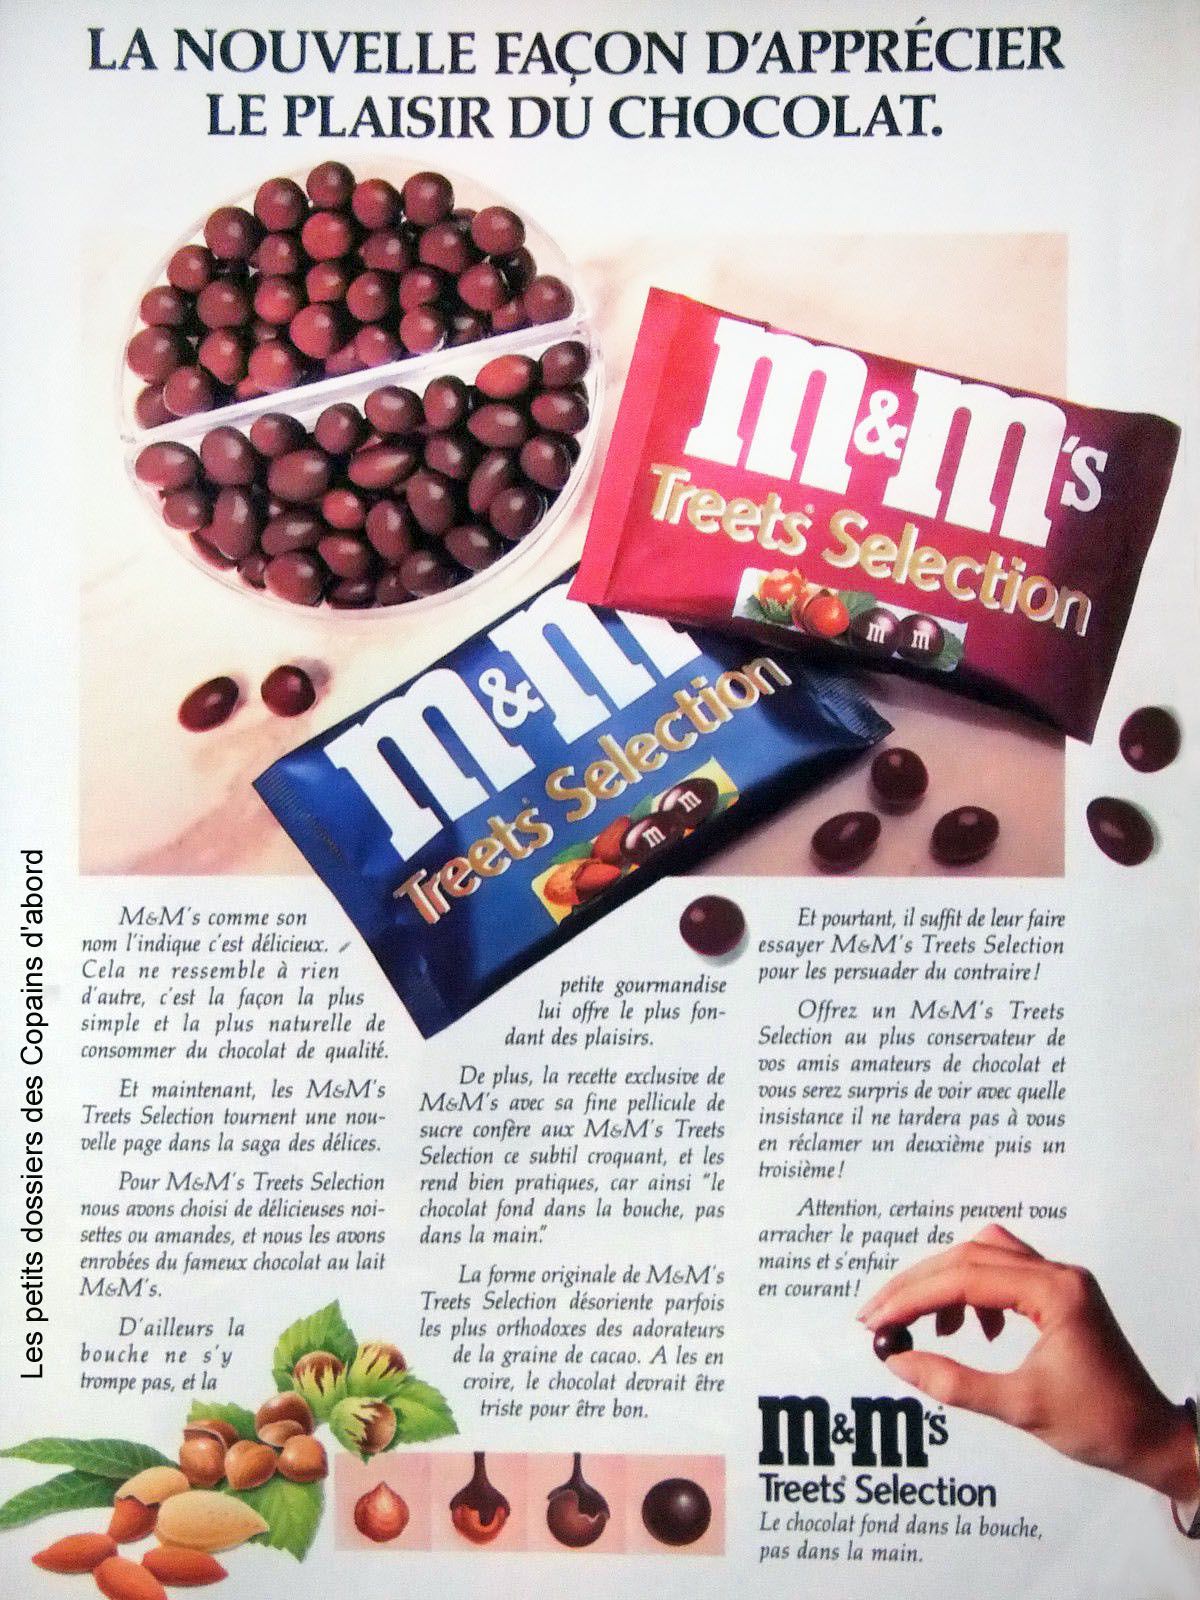 PUBLICITÉ 1990 M&M TREETS SELECTION CHOCOLAT FOND DANS LA BOUCHE  -ADVERTISING